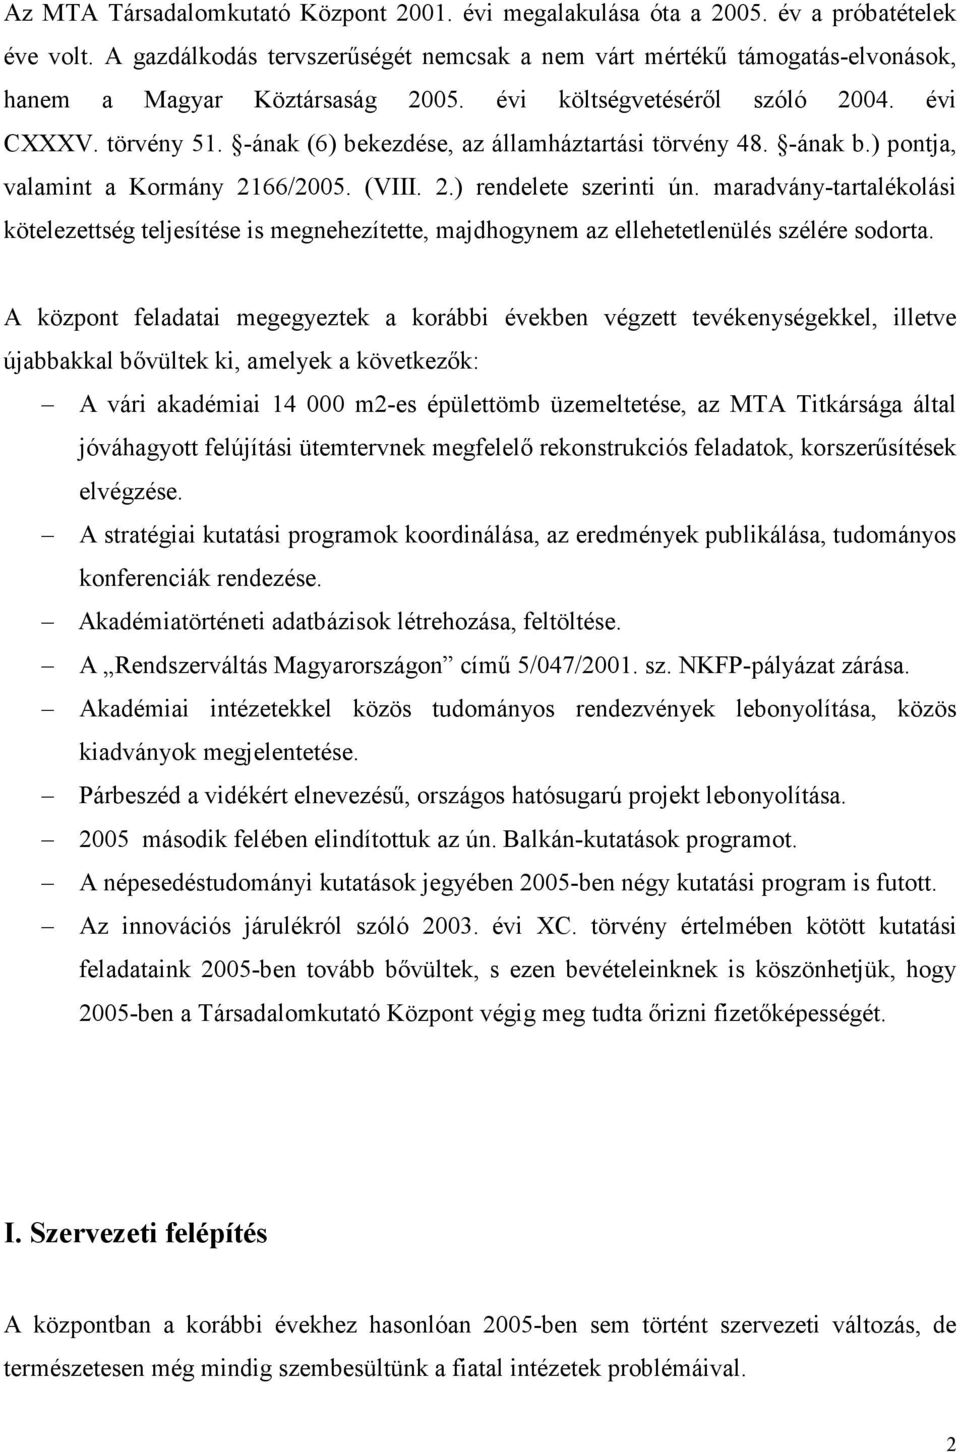 -ának (6) bekezdése, az államháztartási törvény 48. -ának b.) pontja, valamint a Kormány 2166/2005. (VIII. 2.) rendelete szerinti ún.